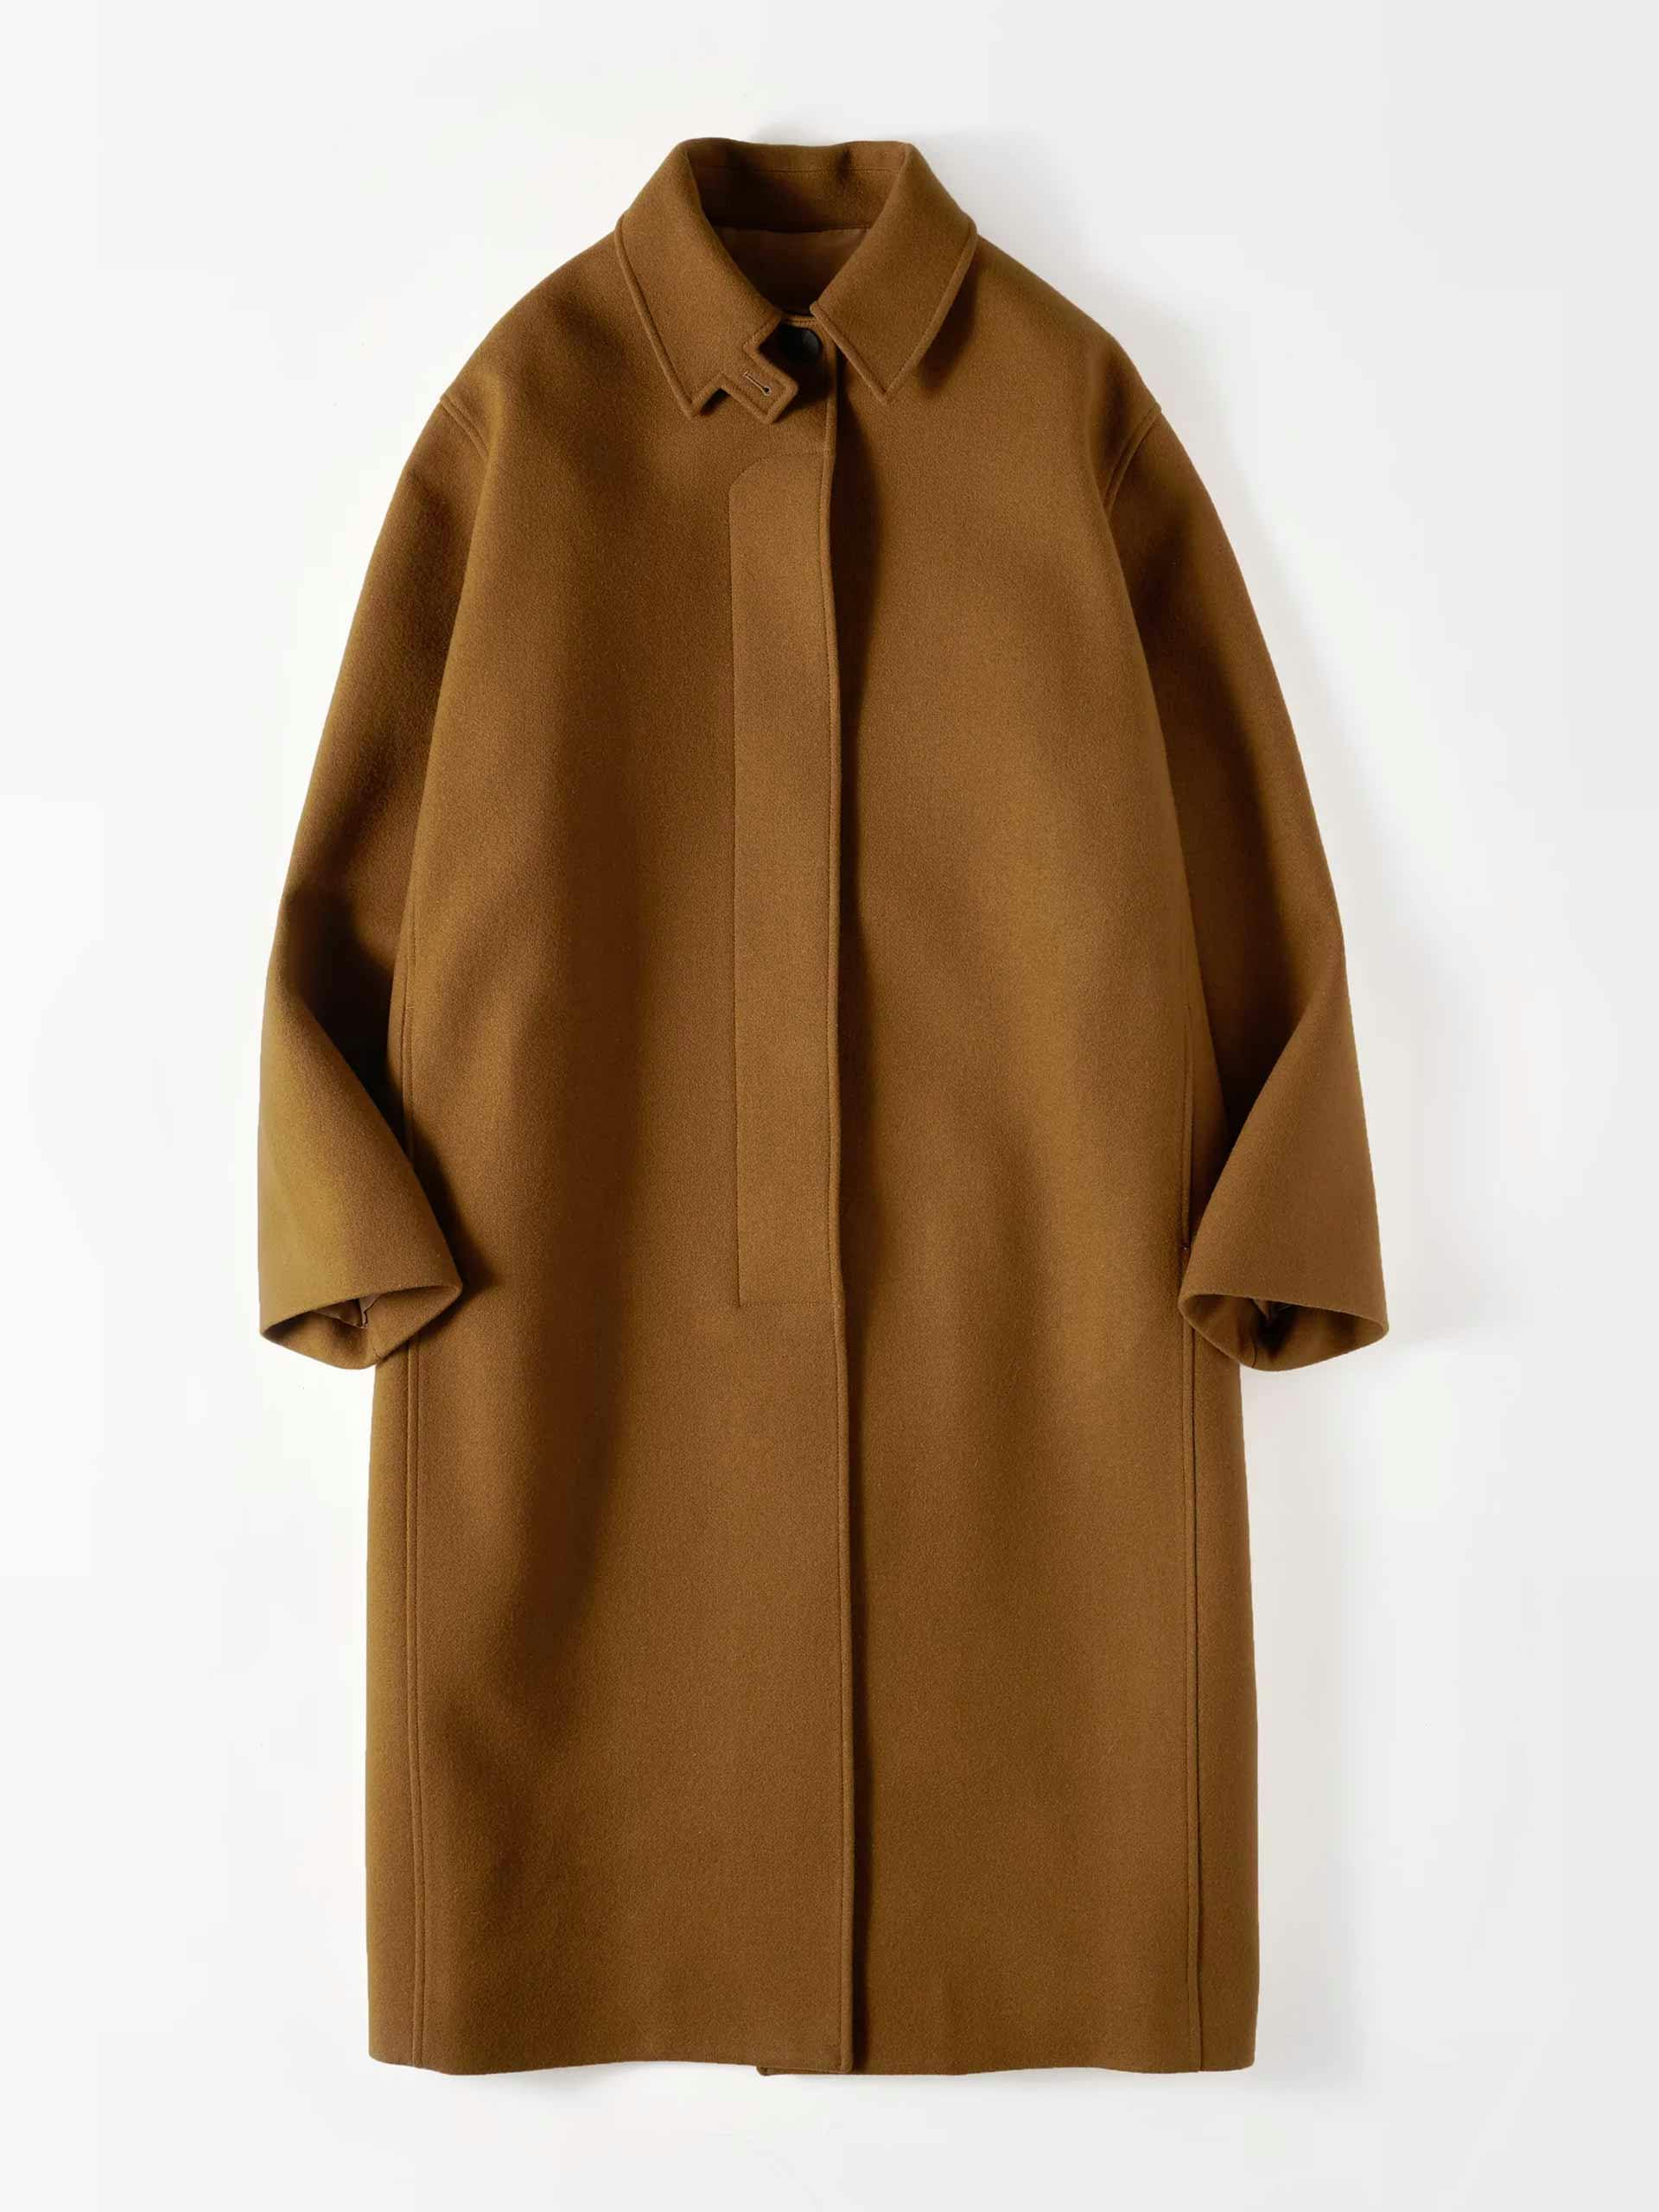 Oversized lined overcoat